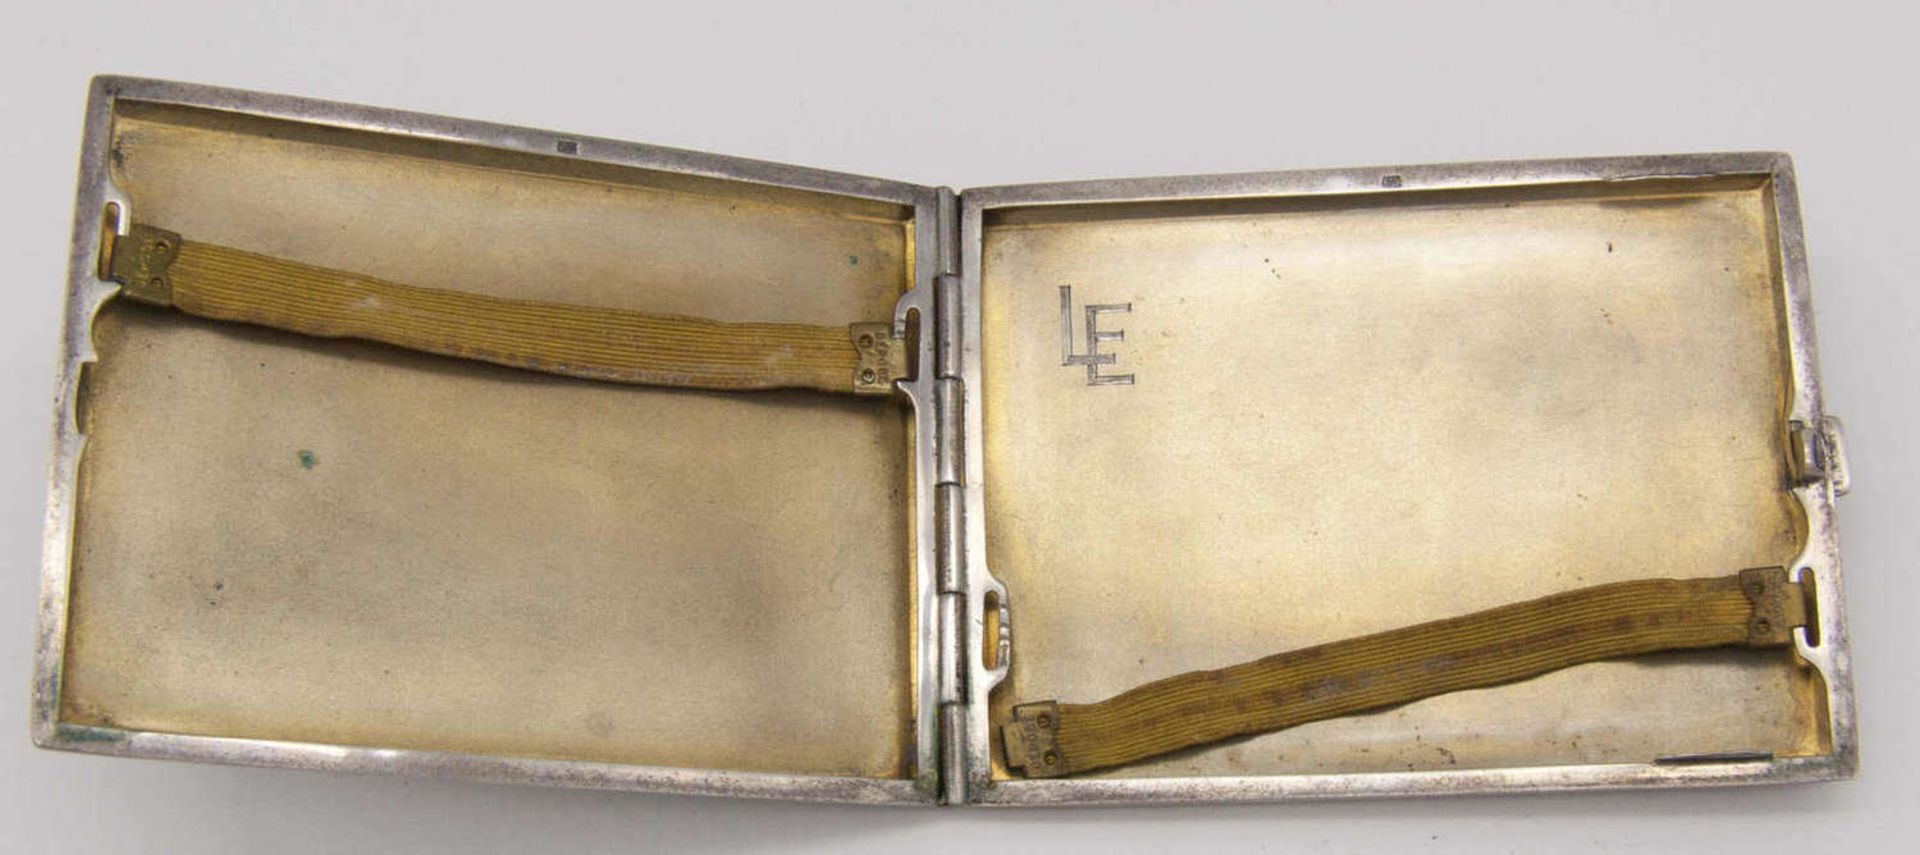 Altes Zigaretten - Etui, Silber 800 (gepunzt). Innen Gravur "LE". Gewicht: ca. 121,3 g.Old cigarette - Bild 2 aus 2